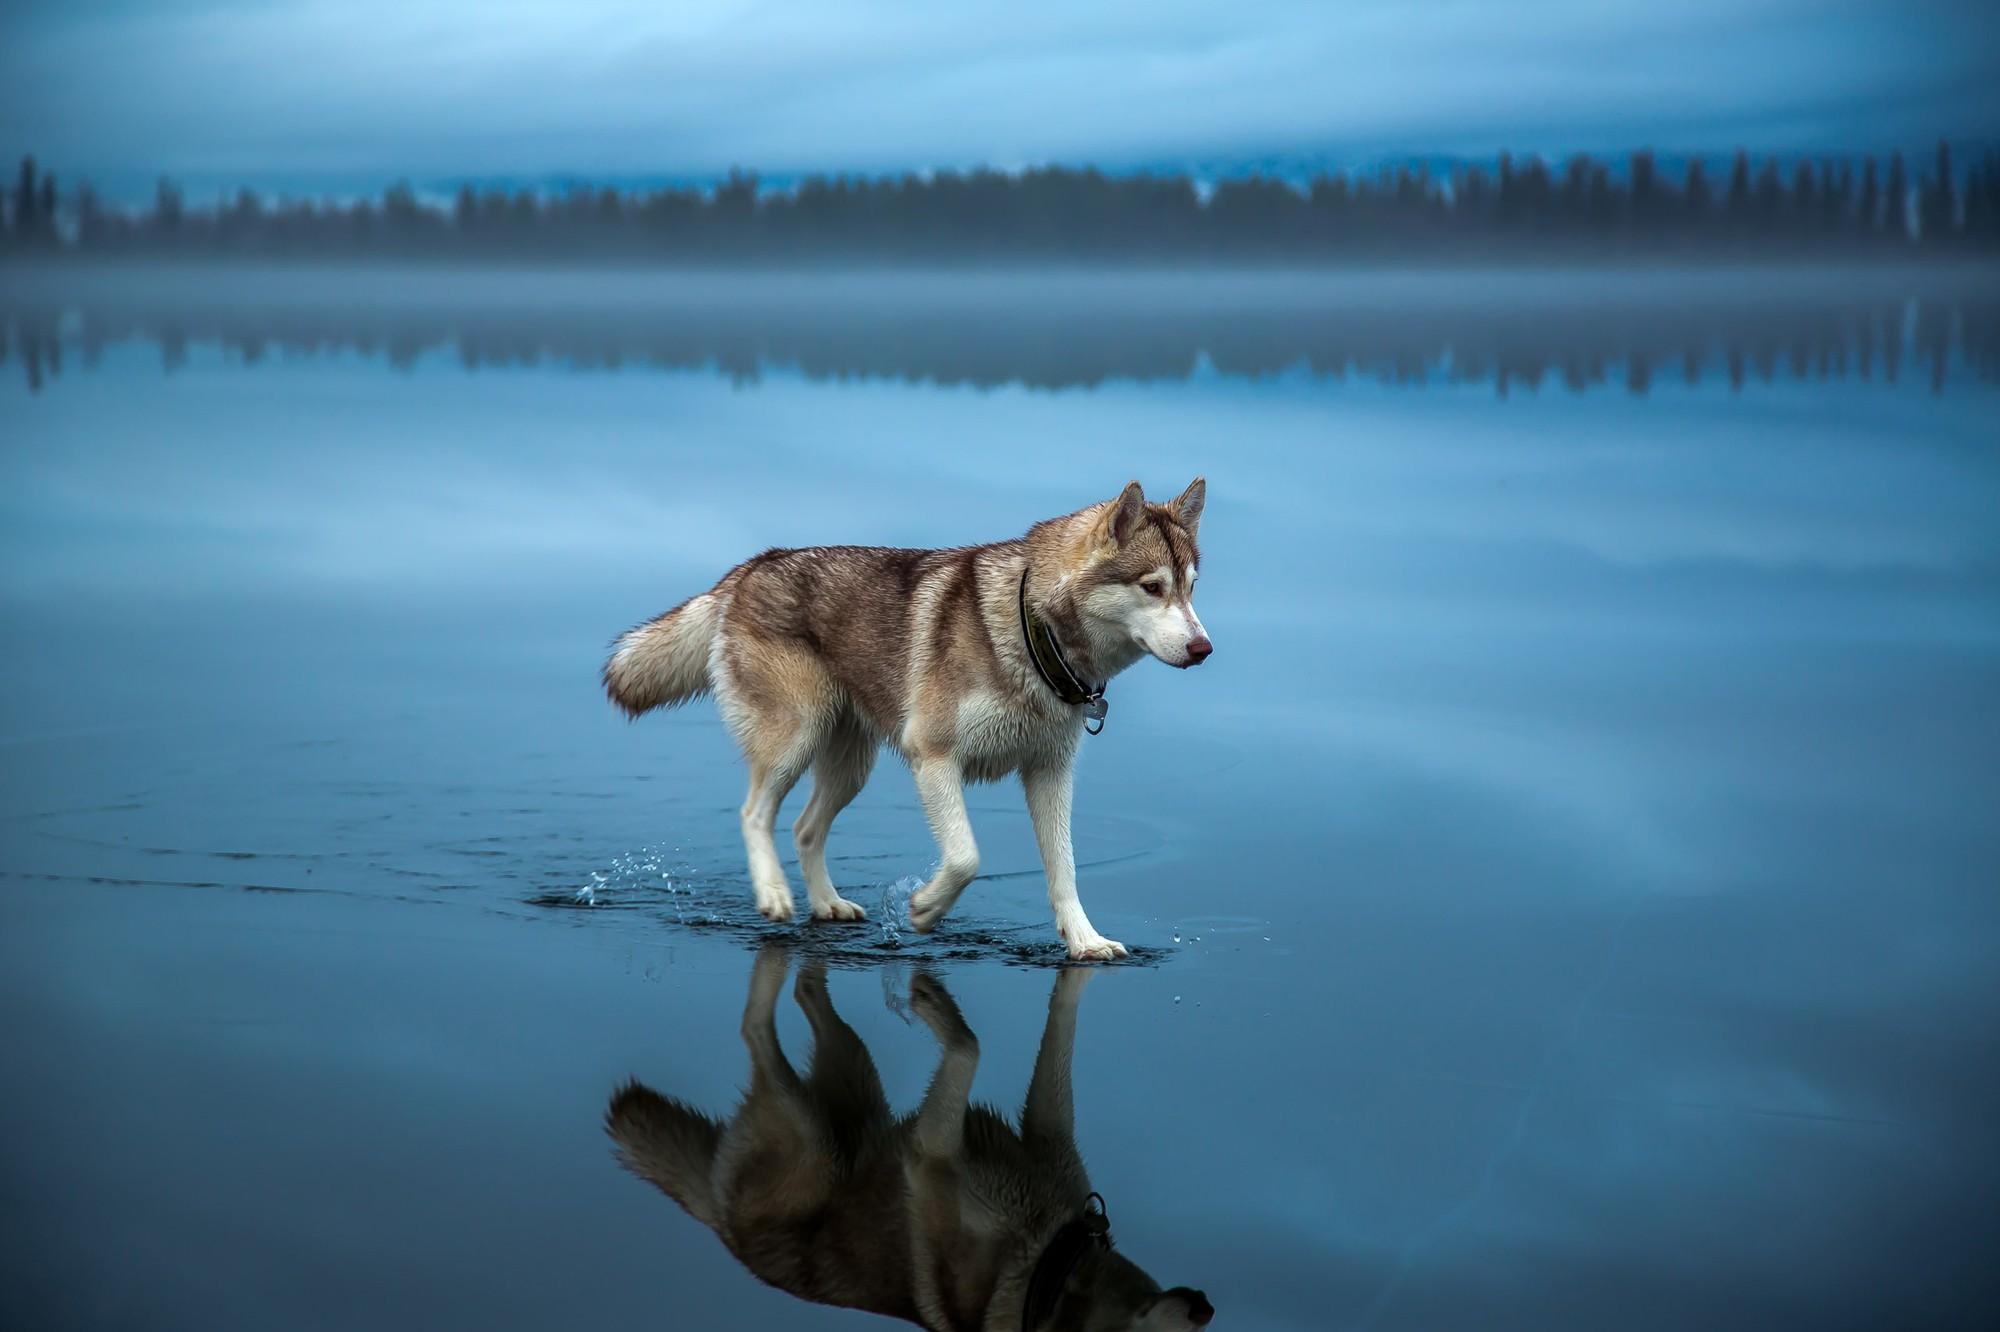 #landscape, #animals, #alone, #reflection, #dog, #lake